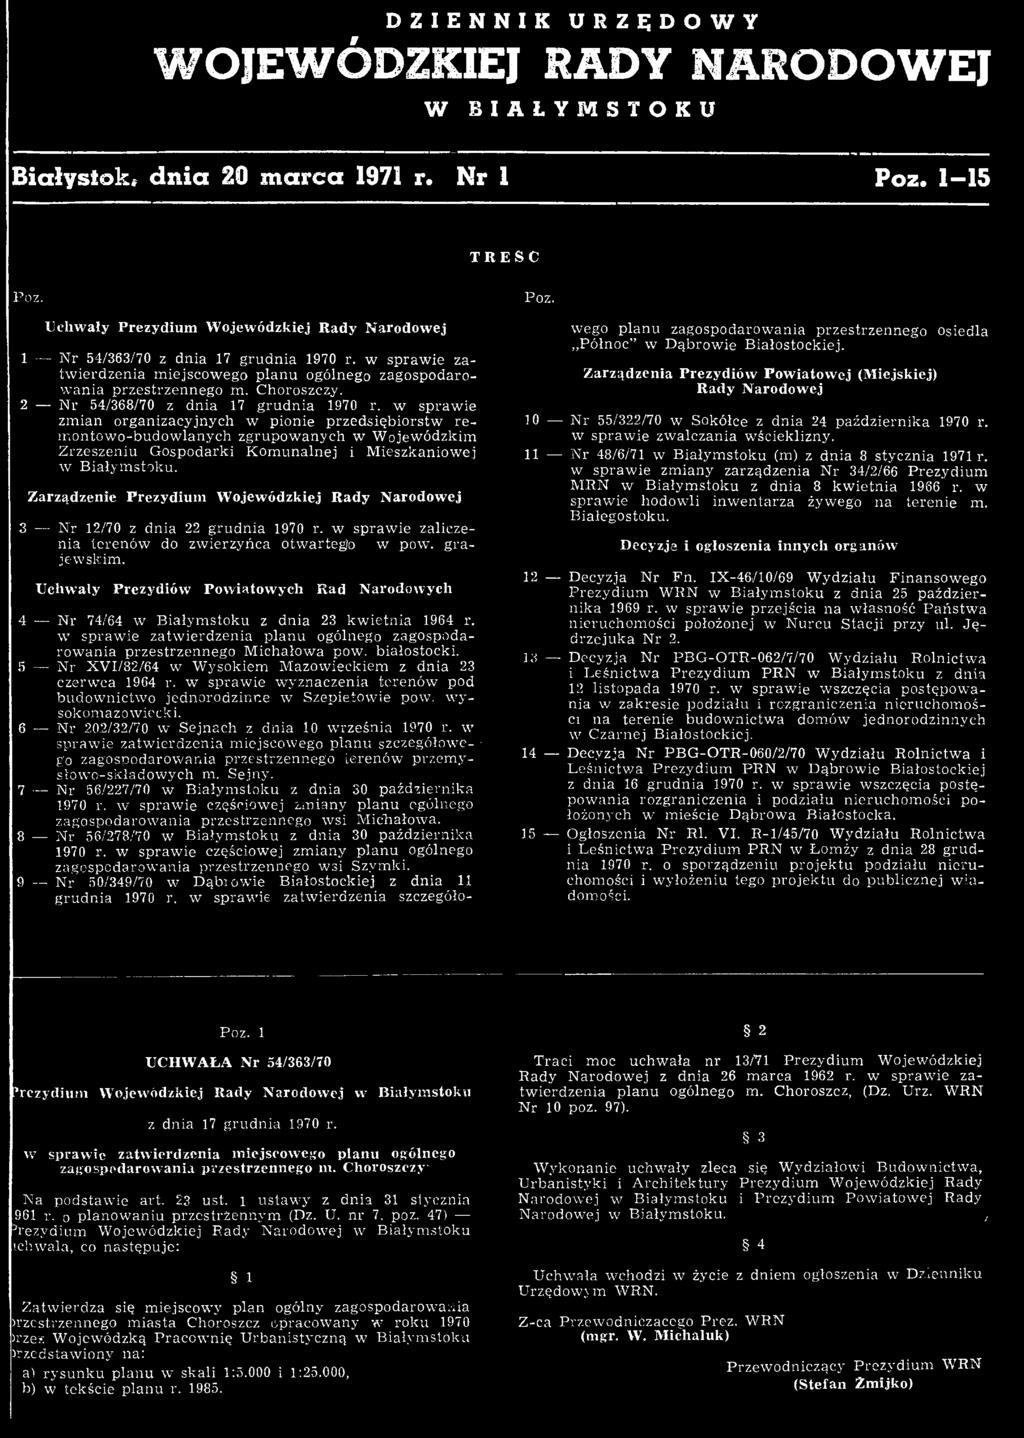 Zarządzenie Prezydium Wojewódzkiej Rady Narodowej 3 N r 12/70 z dnia 22 grudnia 1970 r. w spraw ie zaliczenia terenów do zw ierzyńca otw artego w pow. gra jew skim.